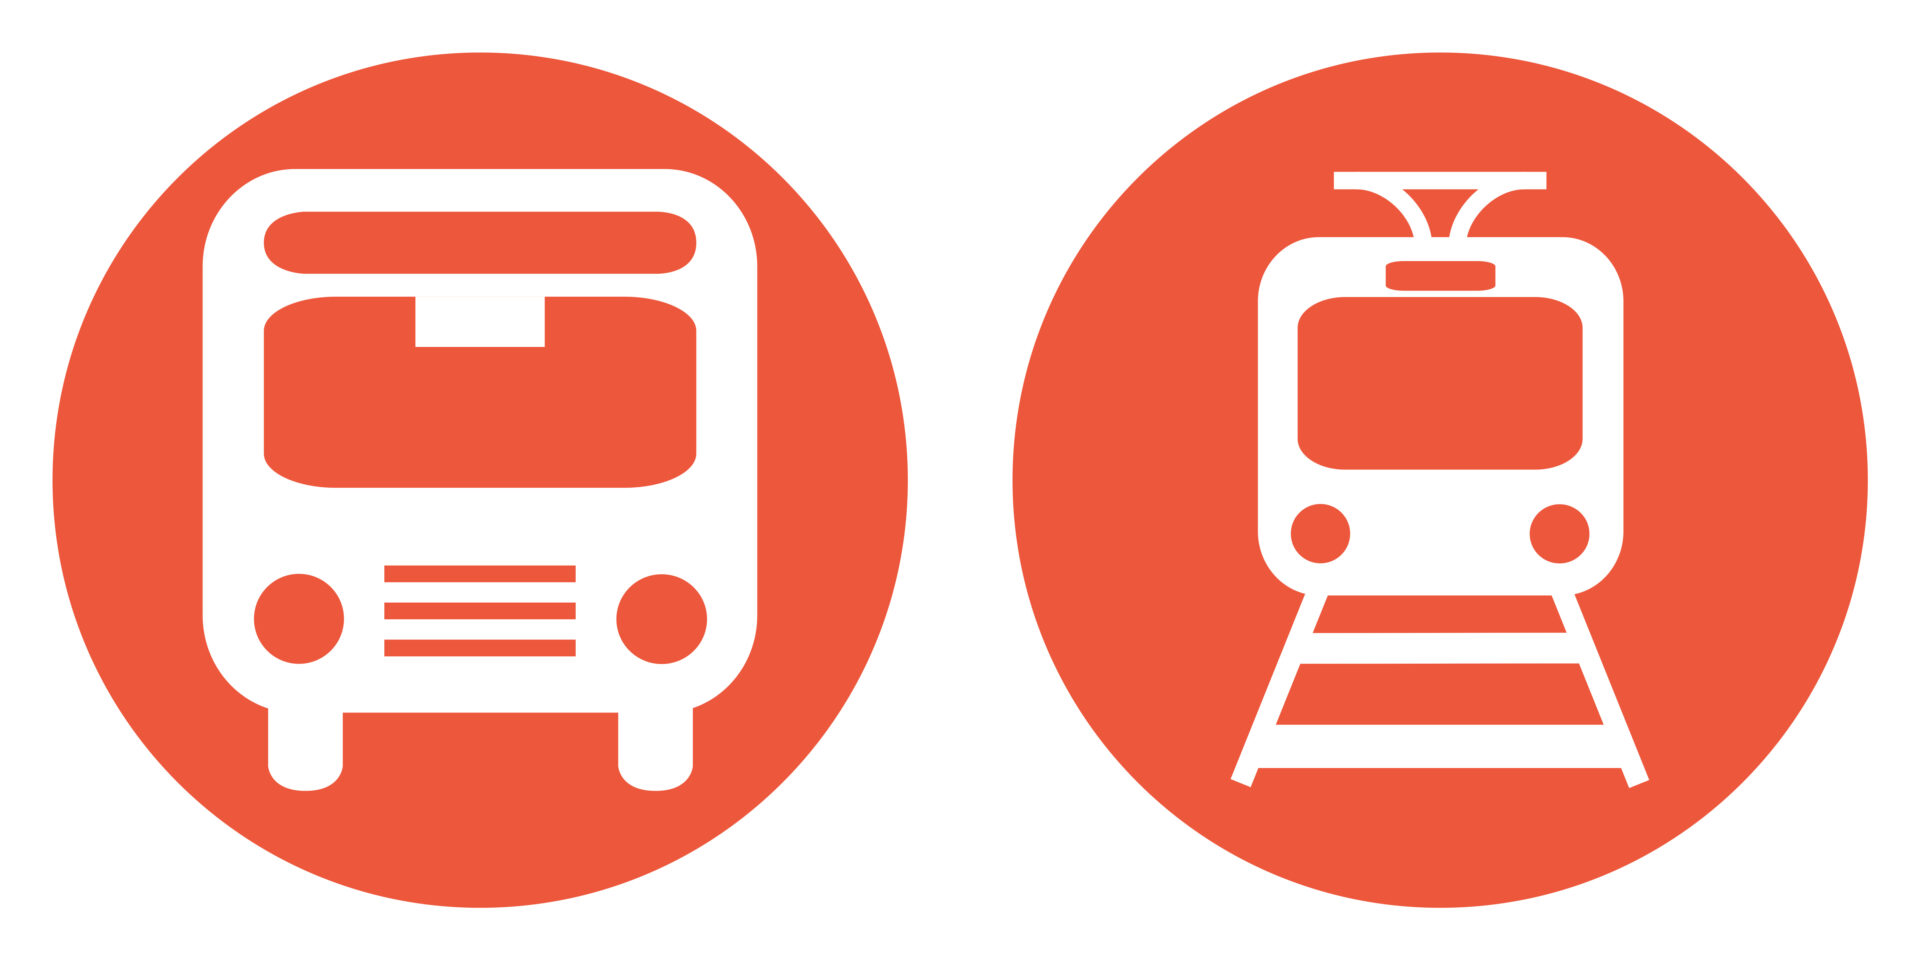 Öffentlicher Nahverkehr, Bus und Bahn